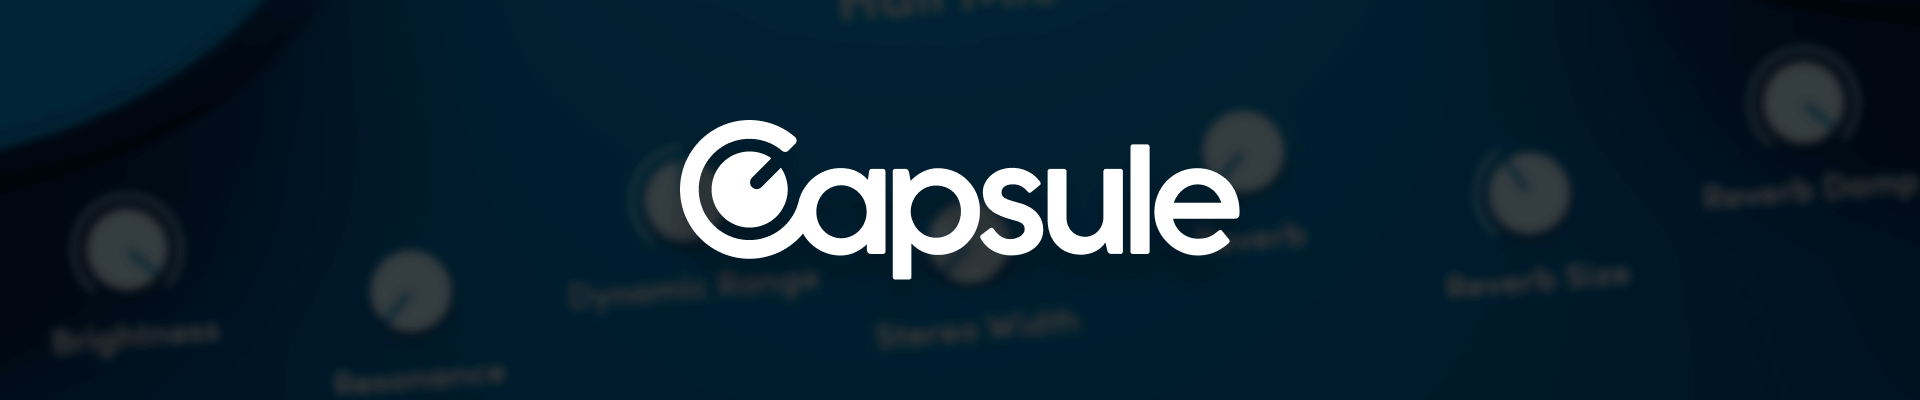 Capsule Audio Banner